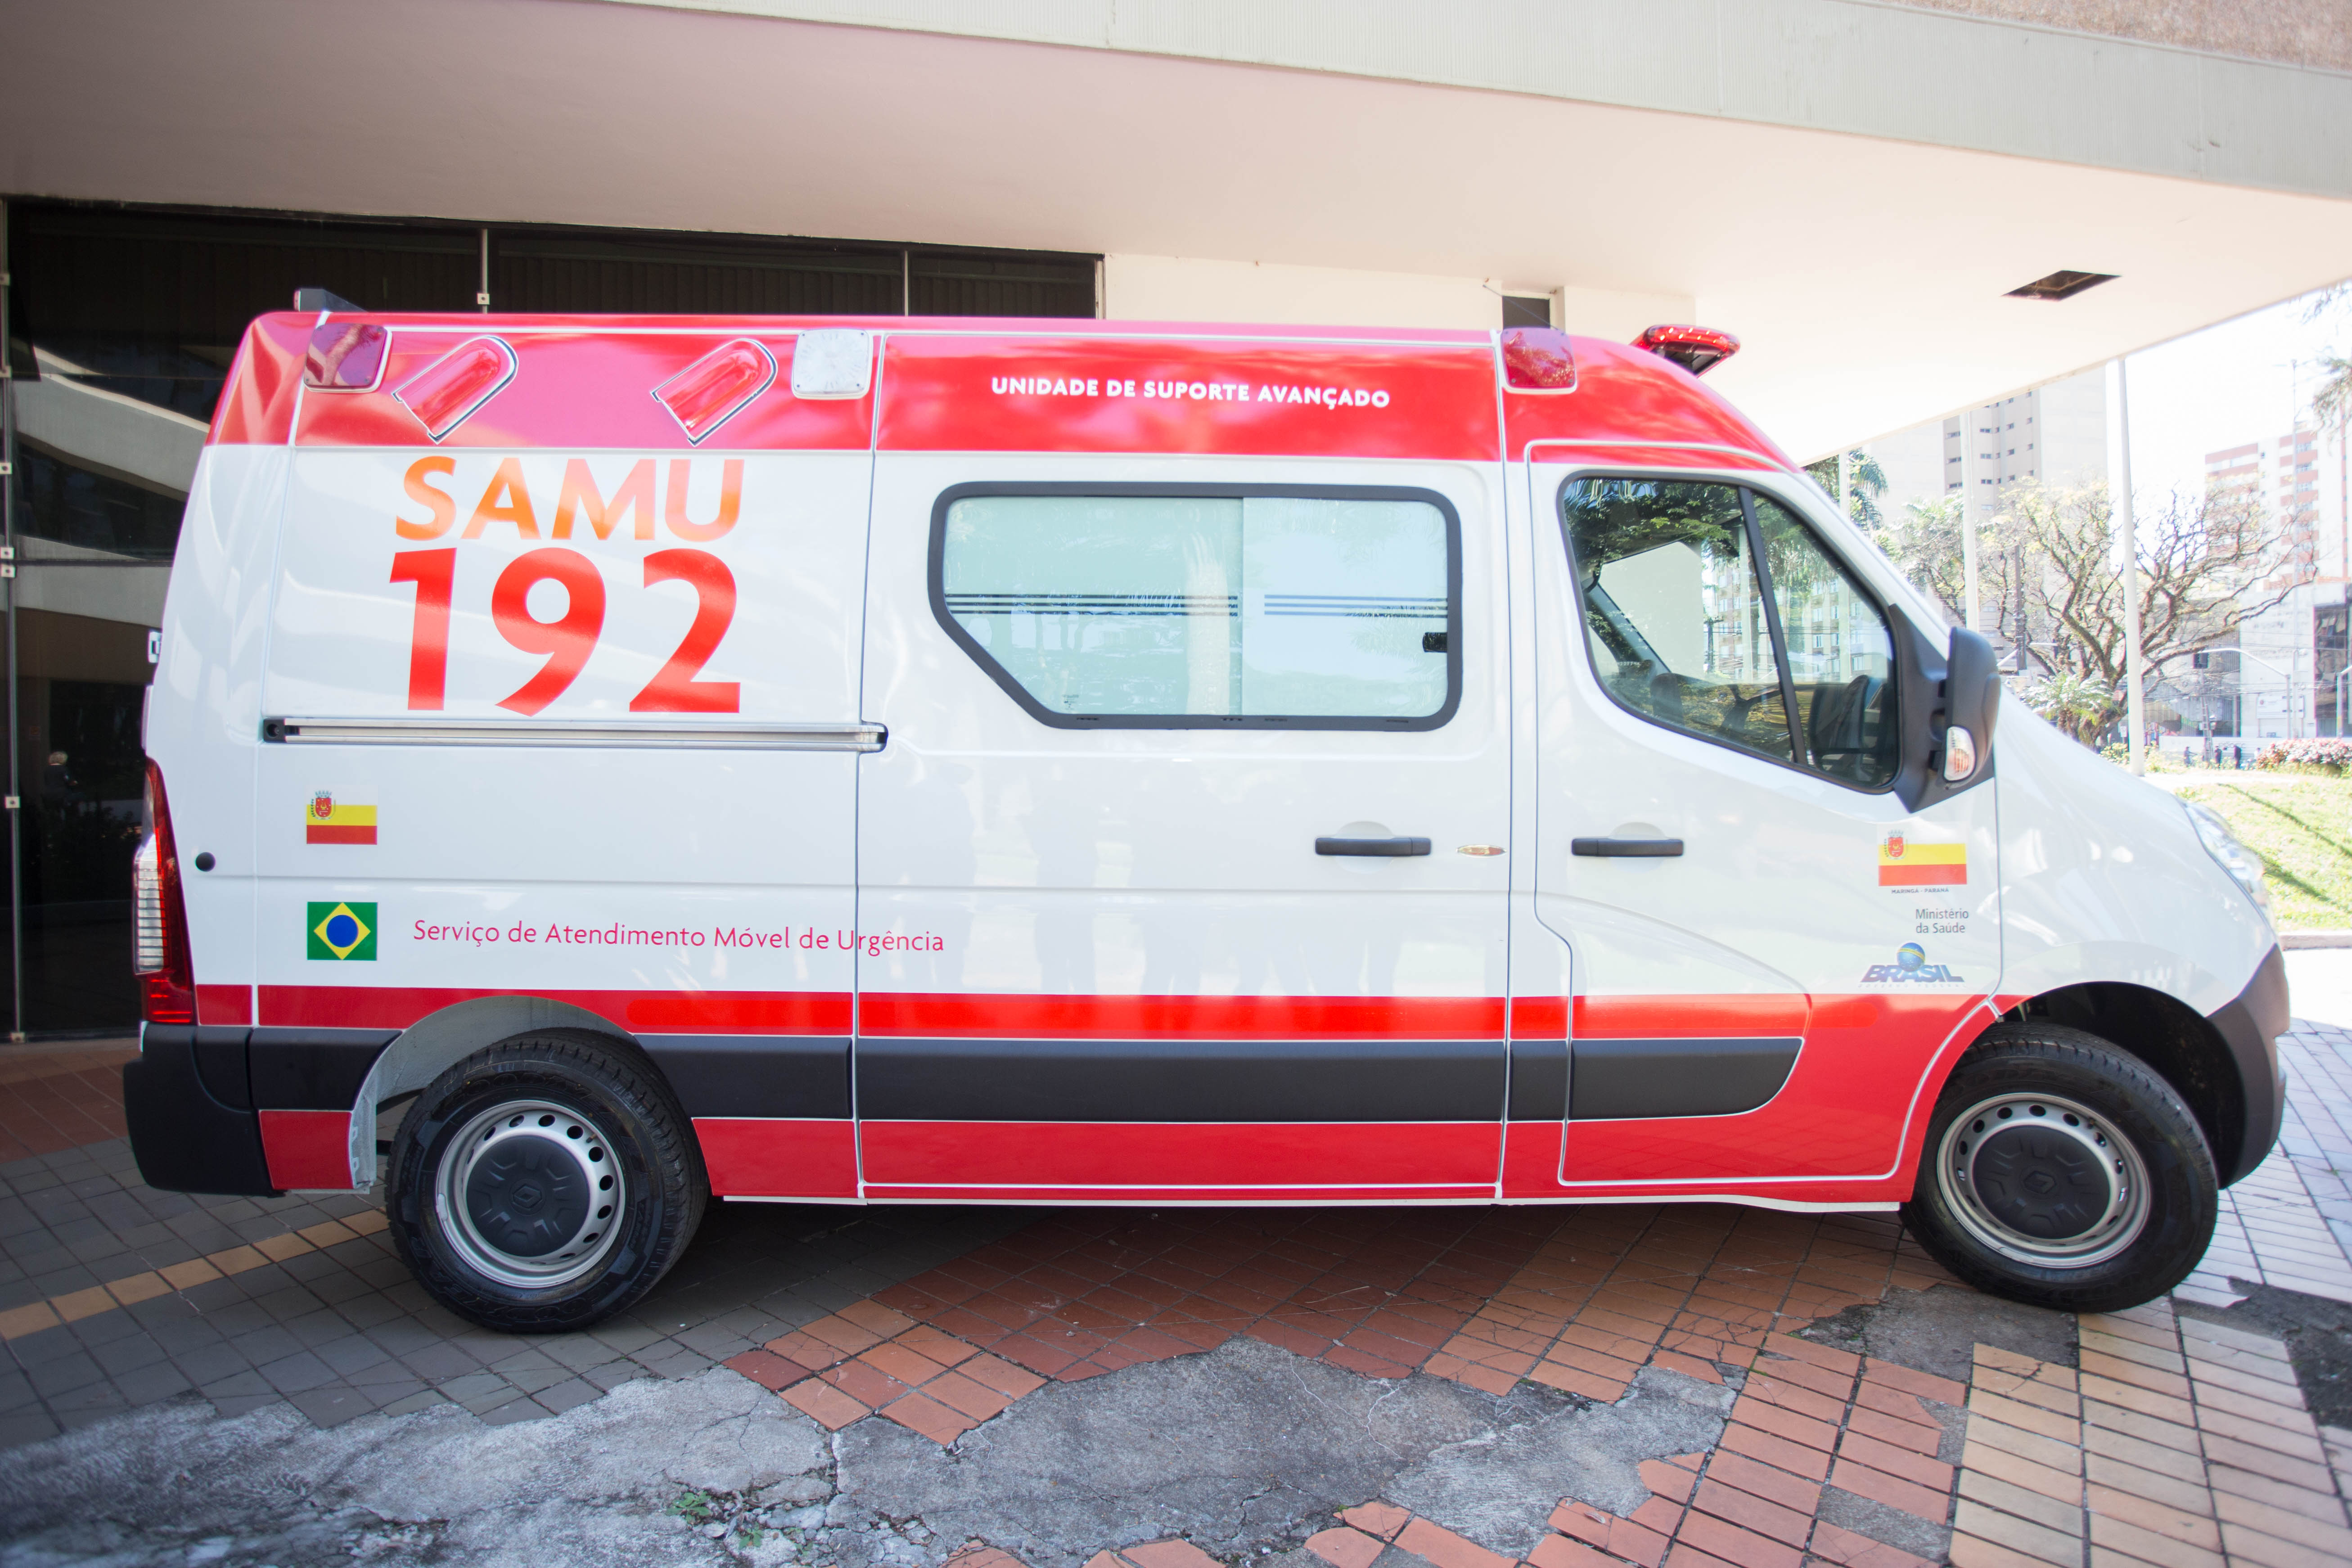 Nova ambulância integra frota do Samu. (foto - Prefeitura de Maringá)